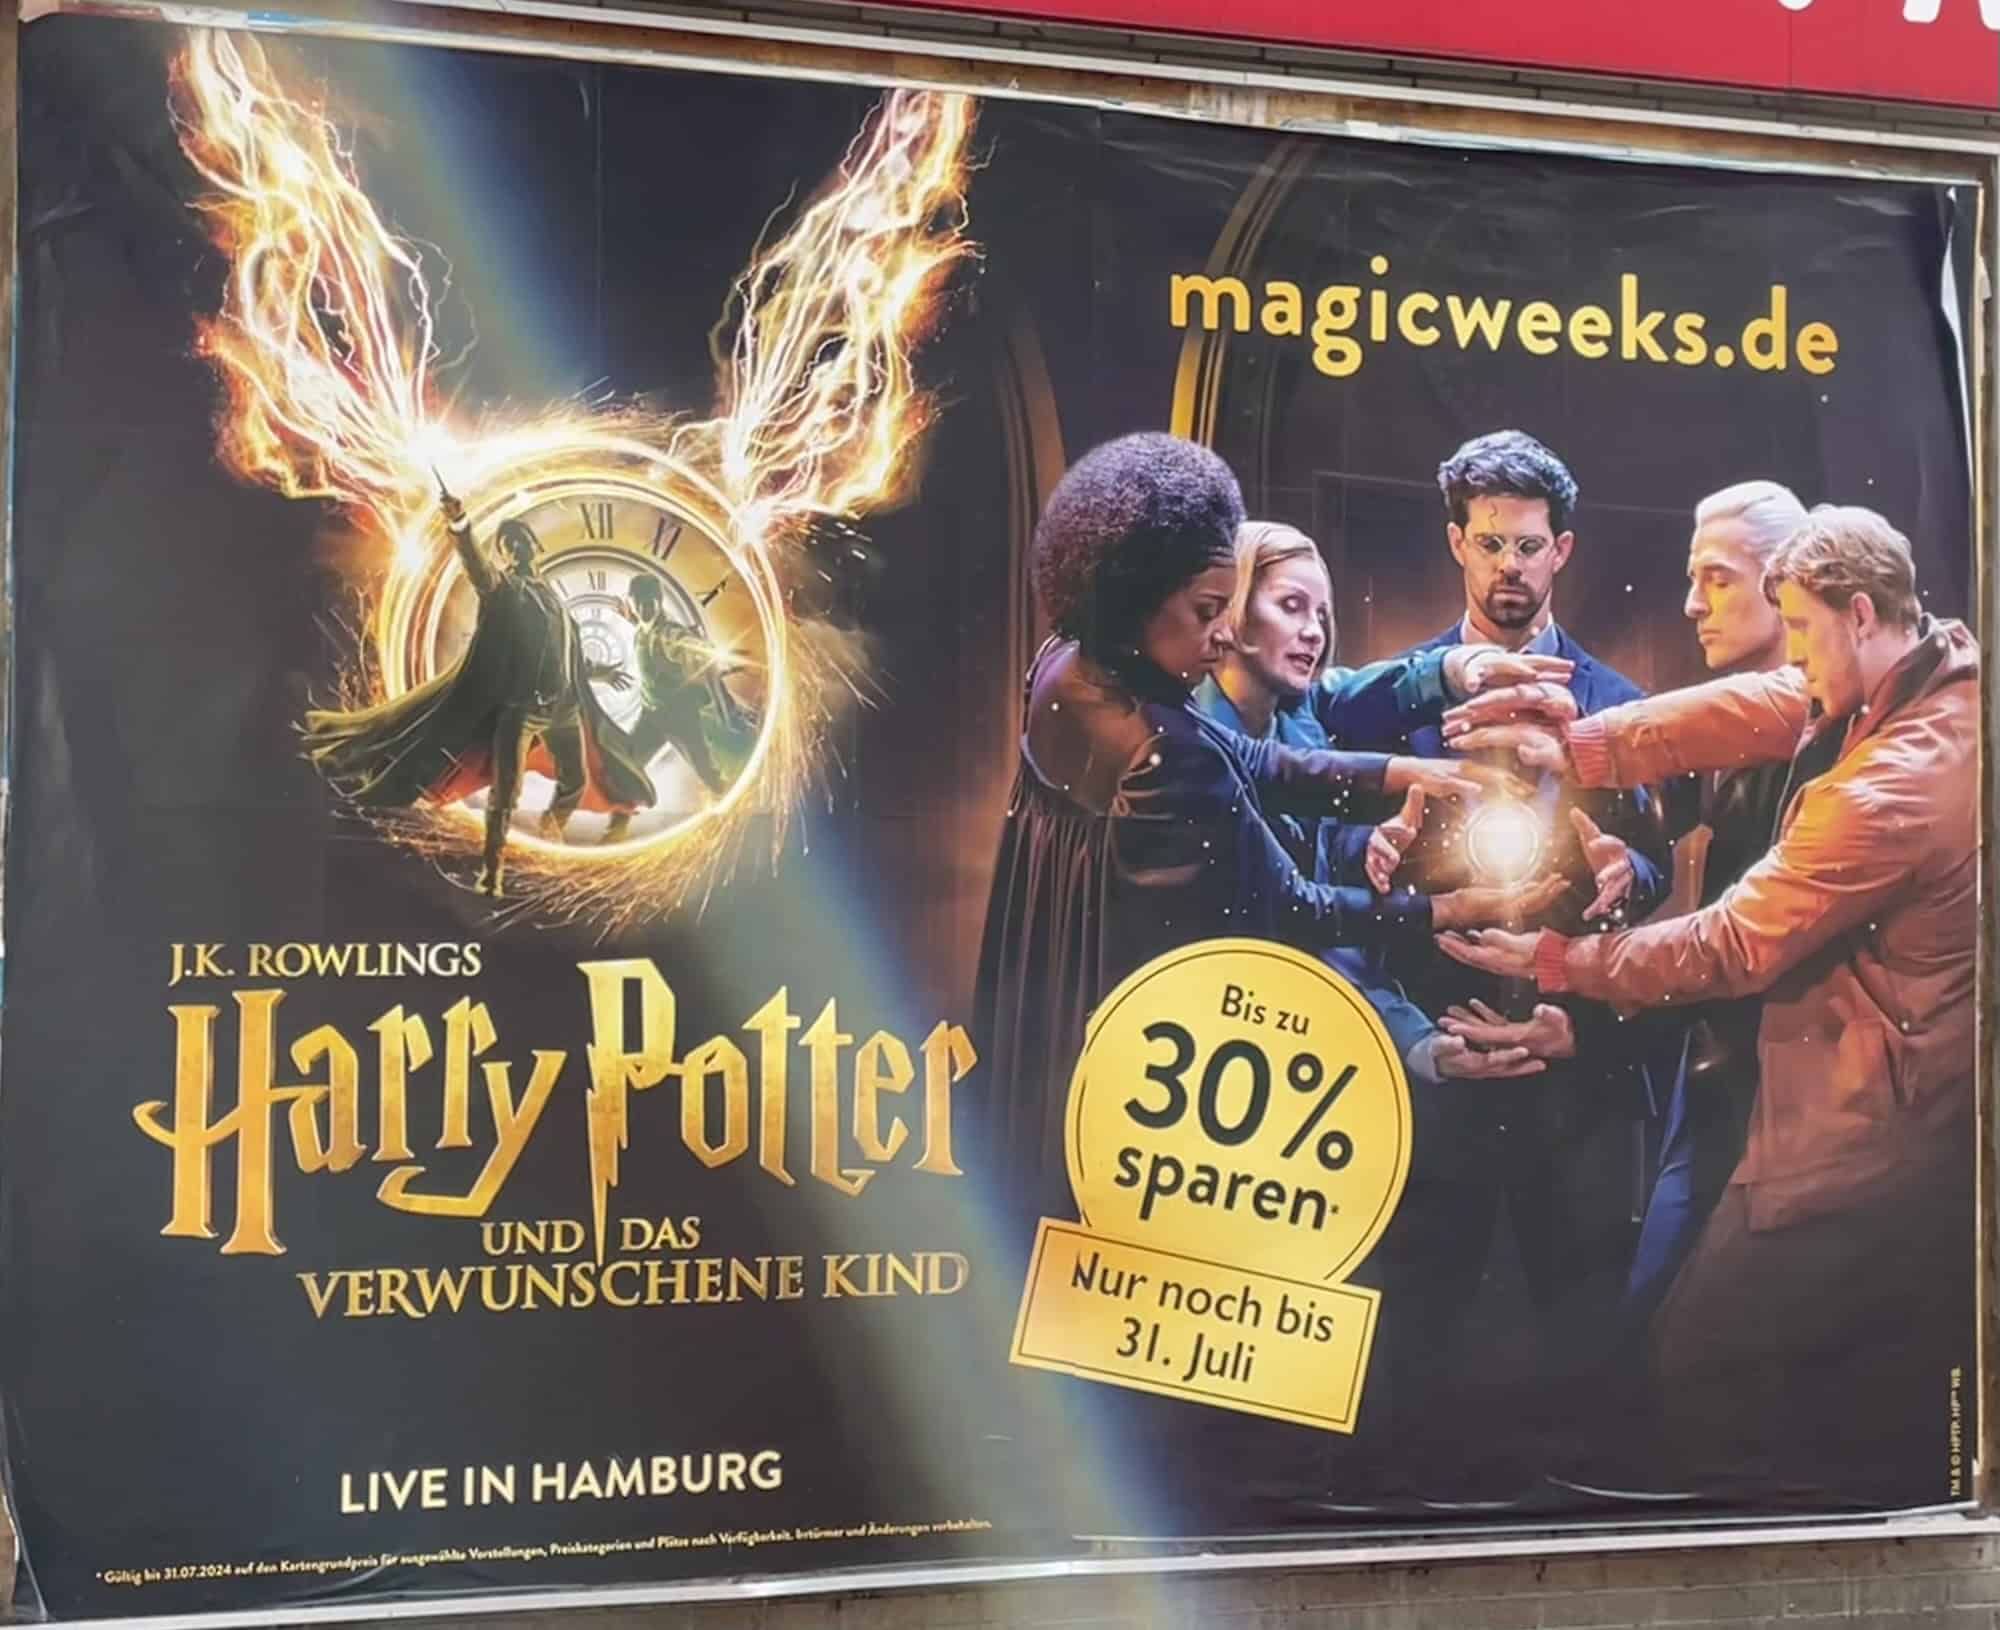 Harry Potter Reklame fürdas Thesterstück in Hamburg.